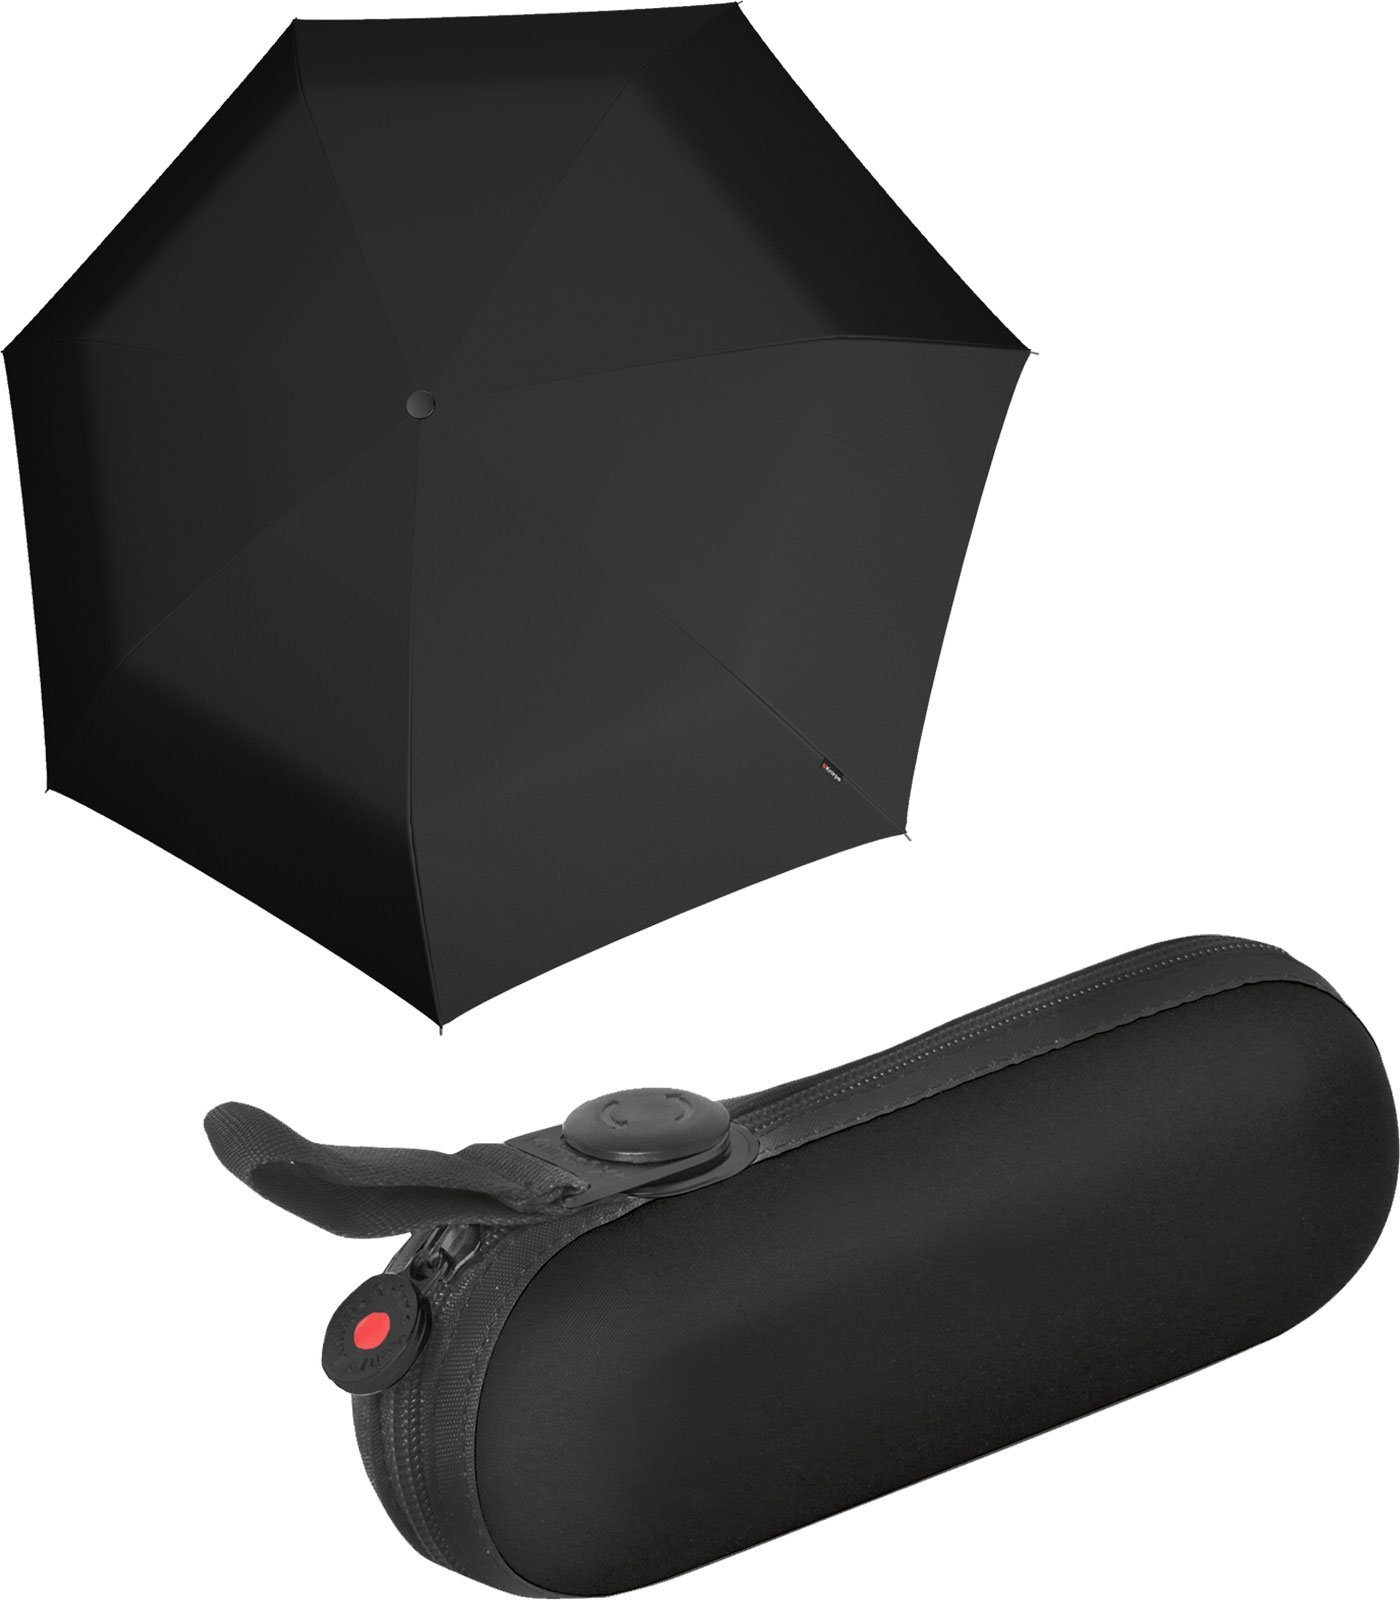 Etui, kleiner mini superthin die black die Taschenregenschirm praktische im mit durch Schlaufe Befestigungsmöglichkeit für Handtasche superthin winzig Regenschirm X1 schwarz Damen-Schirm Knirps®